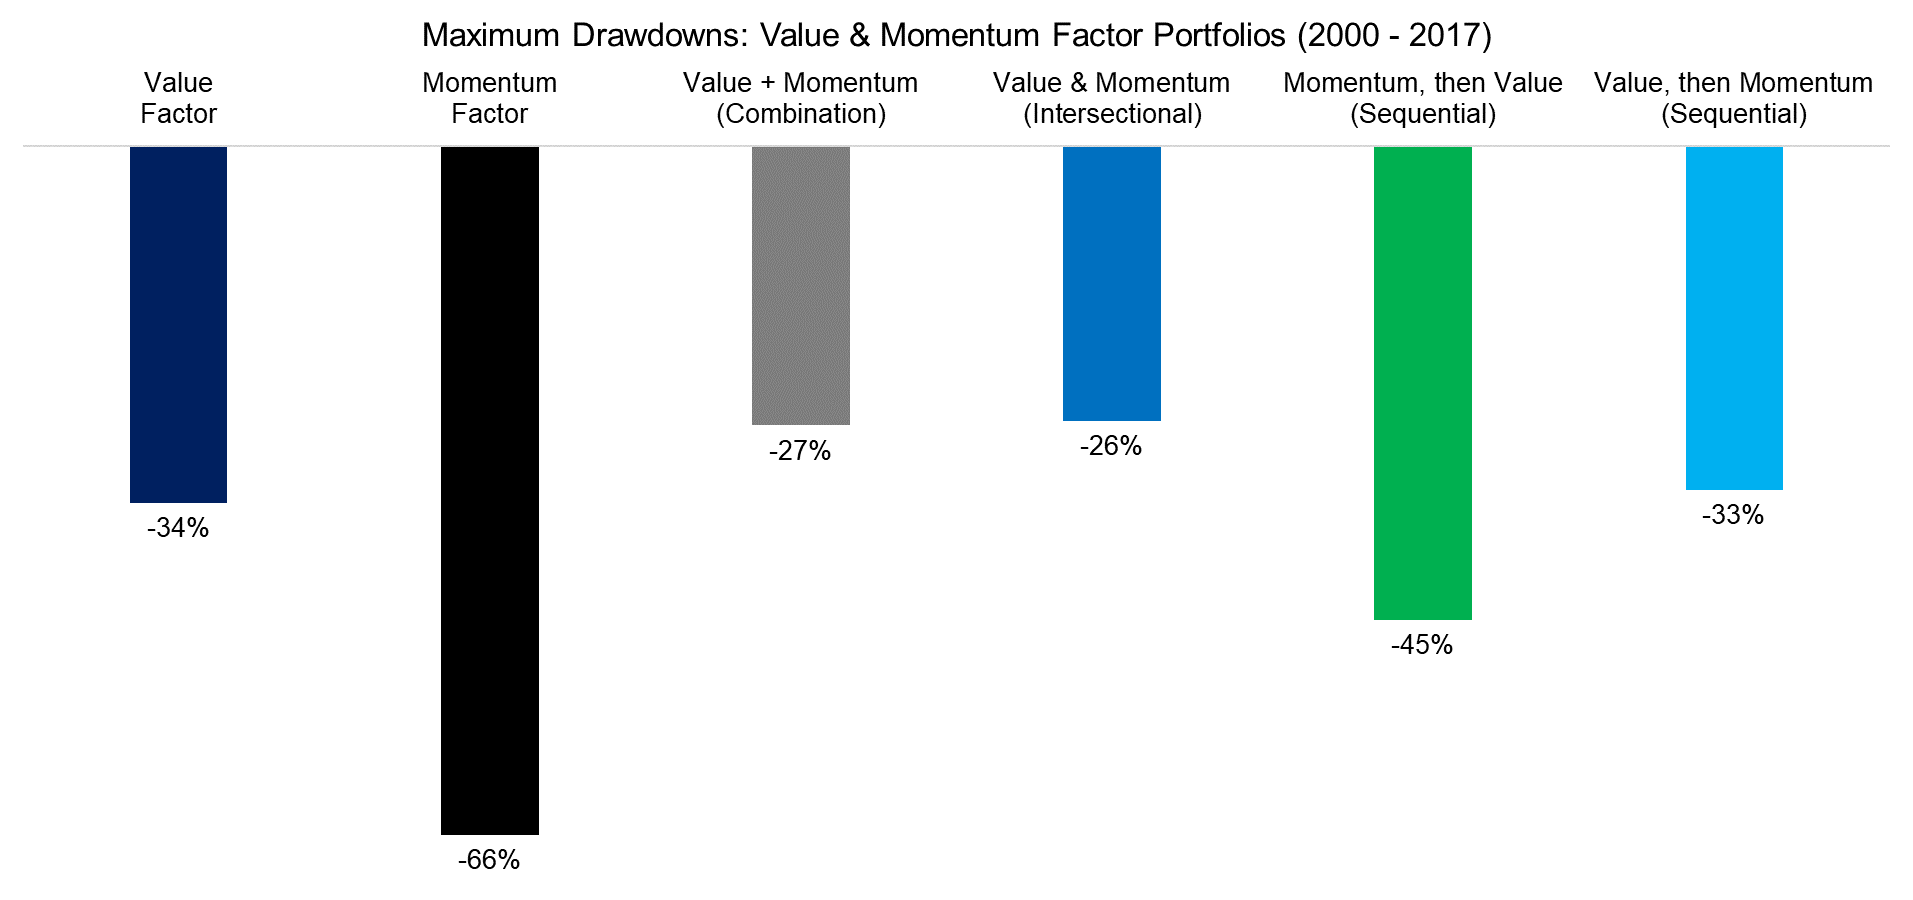 Maximum Drawdowns Value & Momentum Factor Portfolios (2000 - 2017)